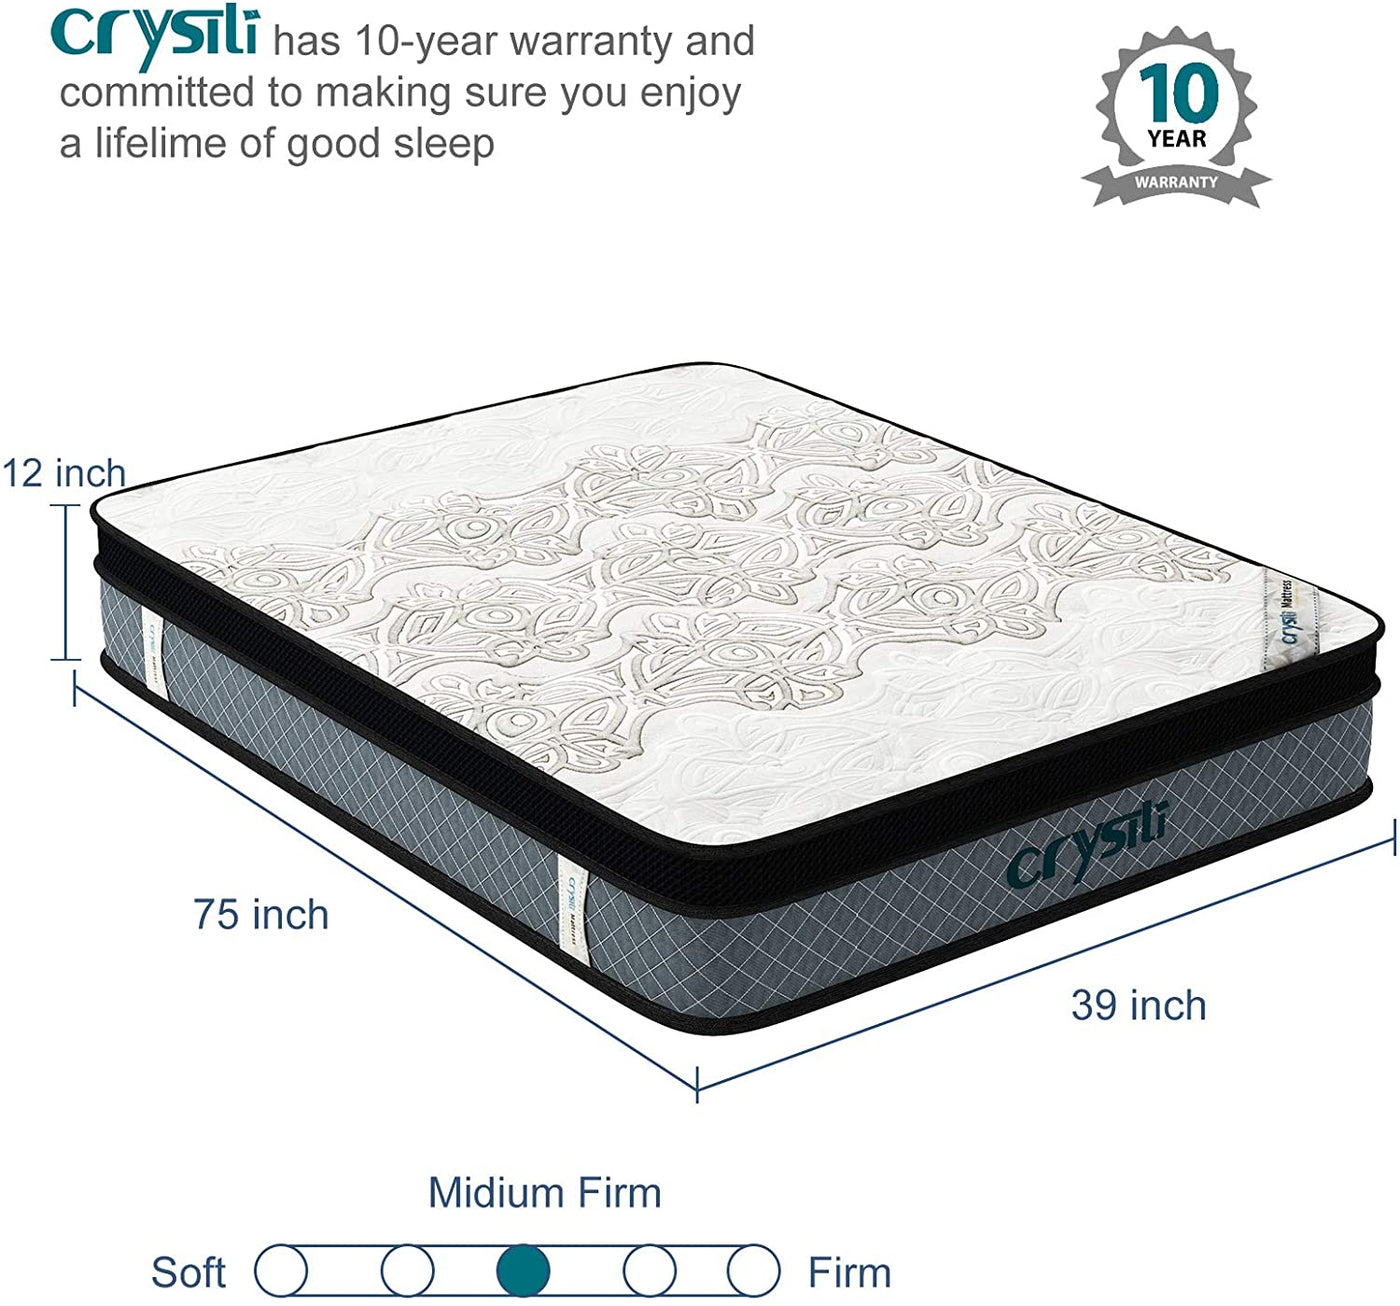 Crystli |12-inch Hybrid Mattress